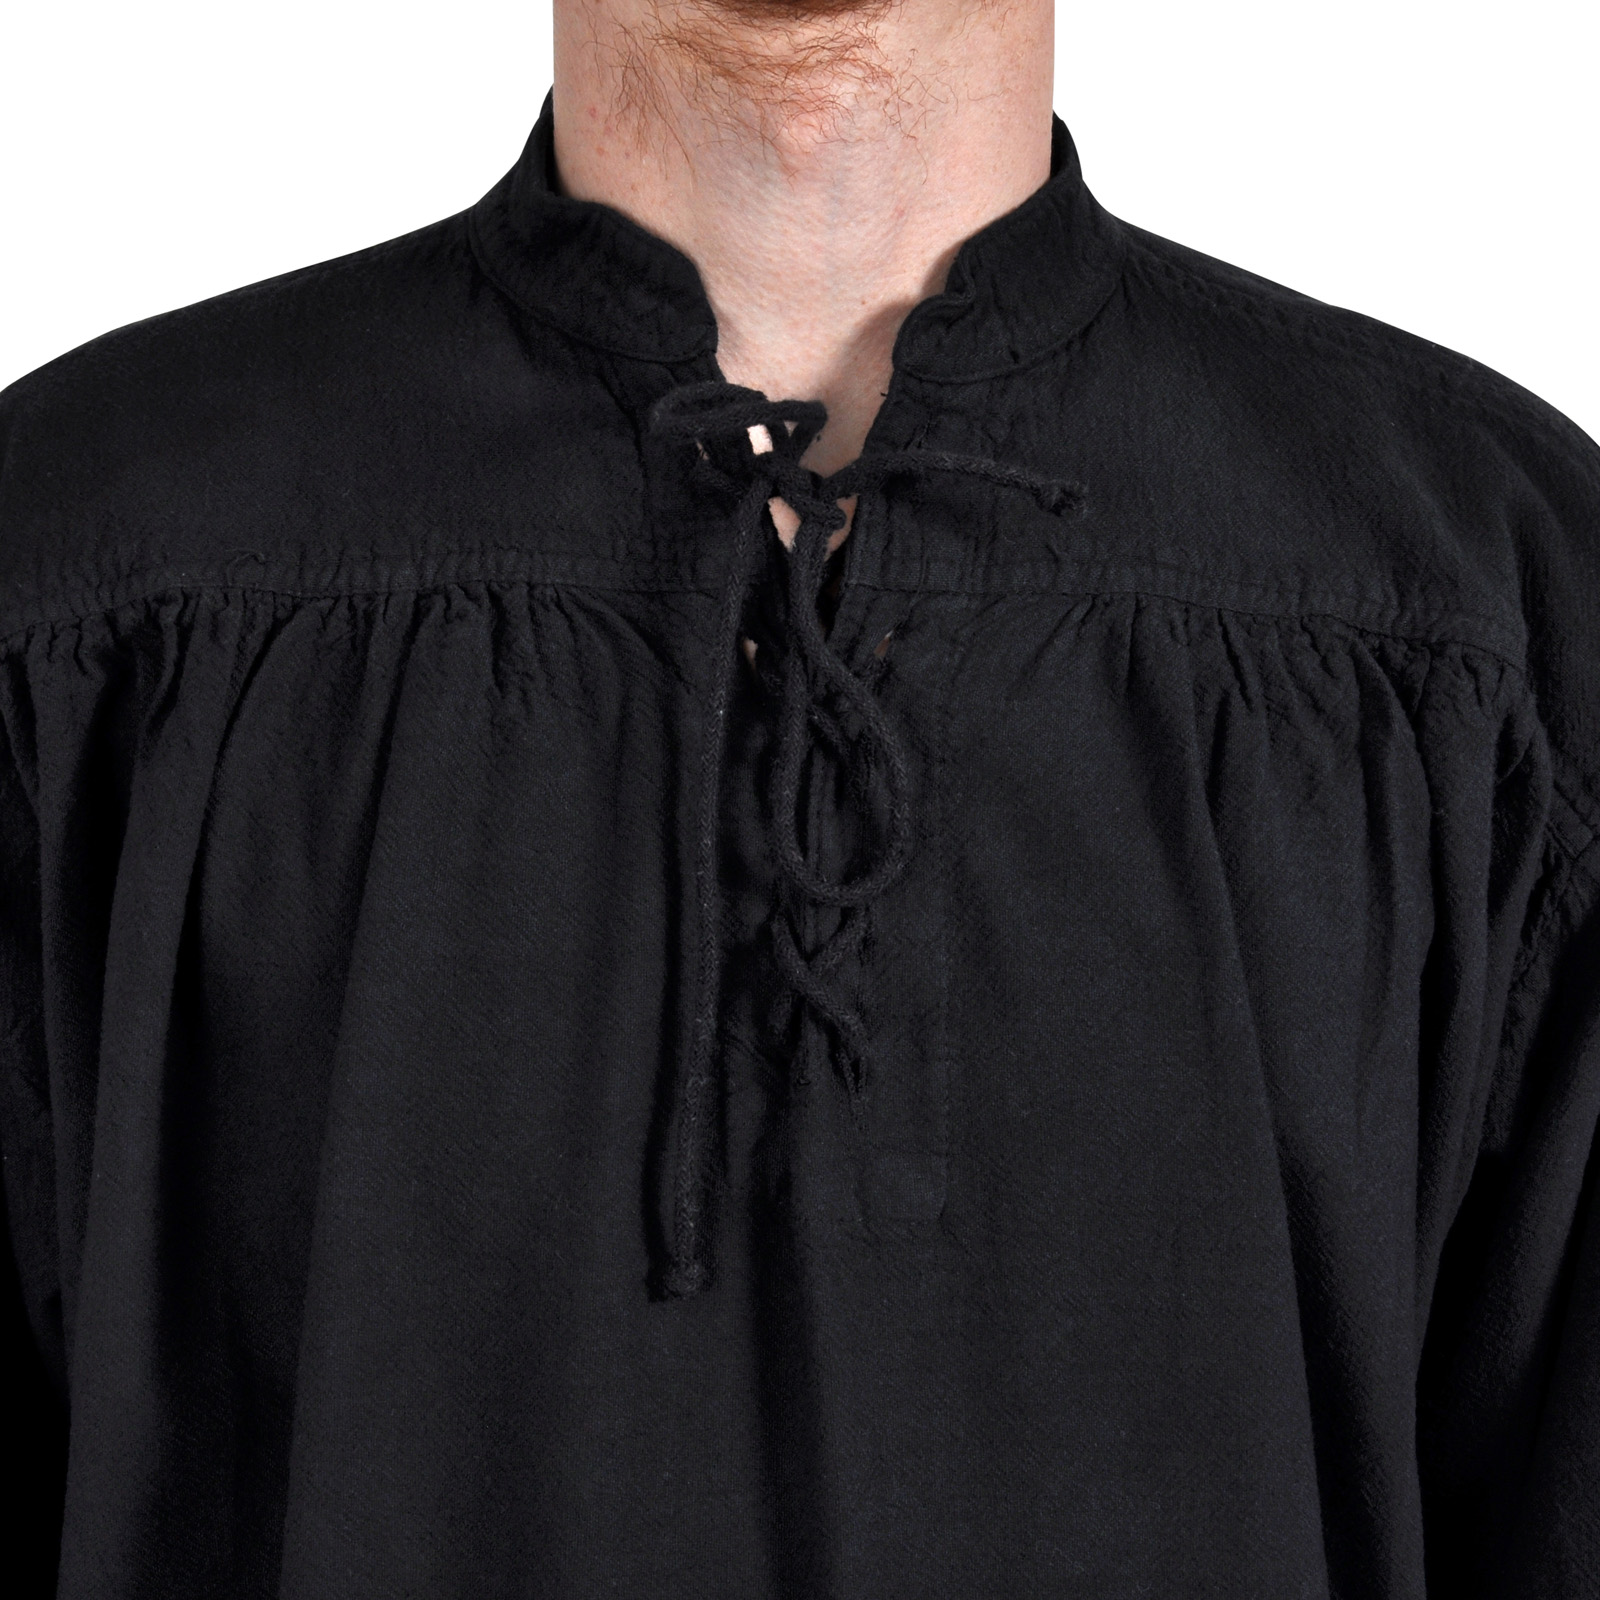 Adalbert - Mittelalter Hemd mit Frontschnürung schwarz